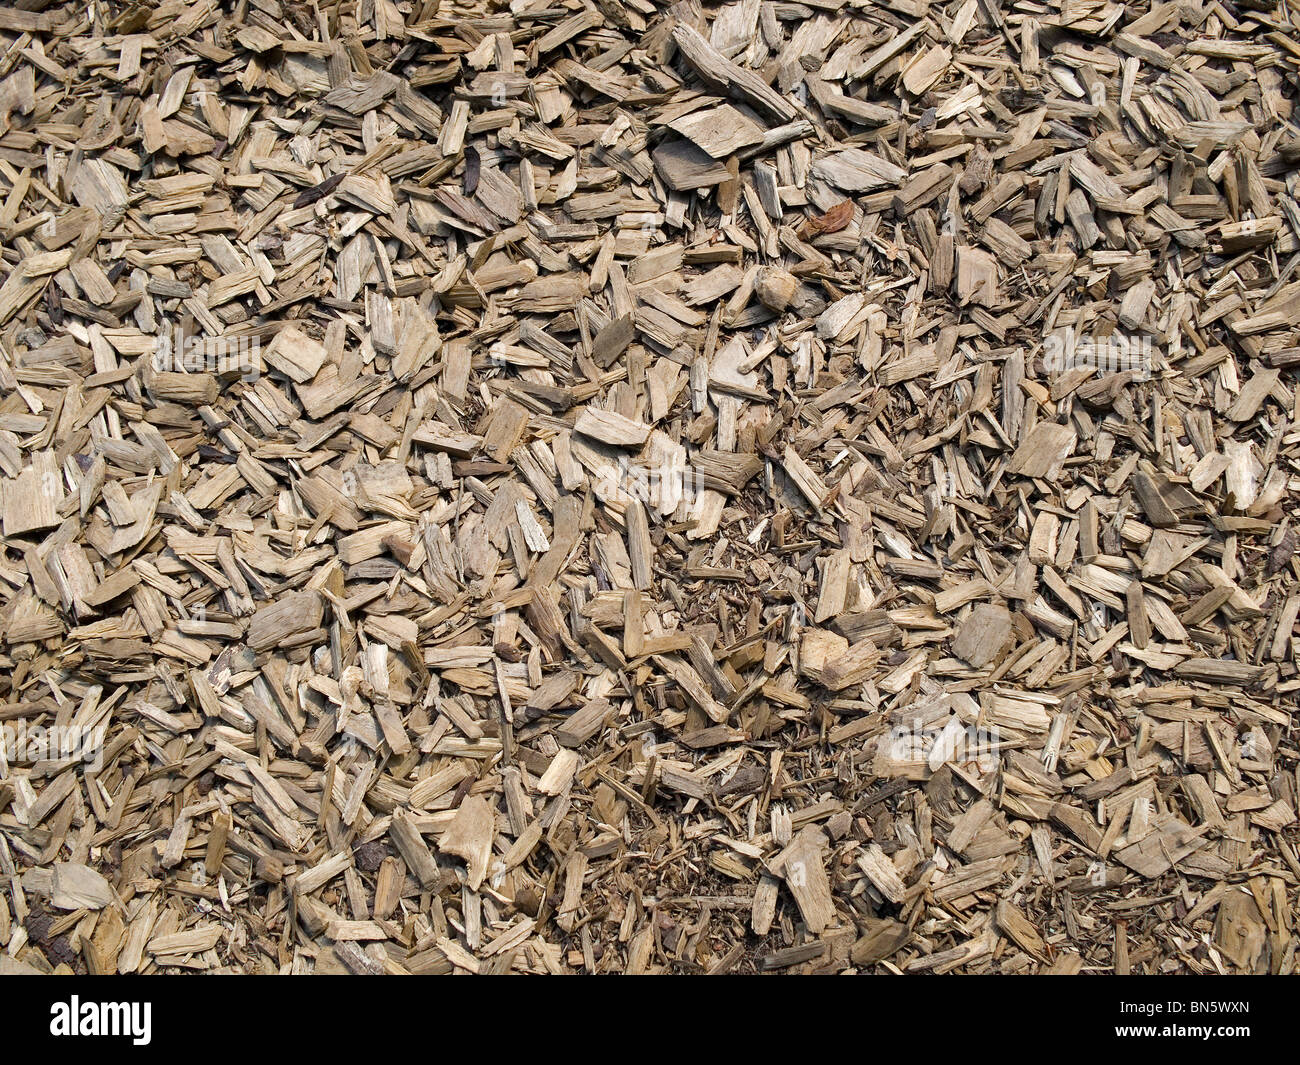 Astillas de madera y corteza cubierta de tierra Foto de stock